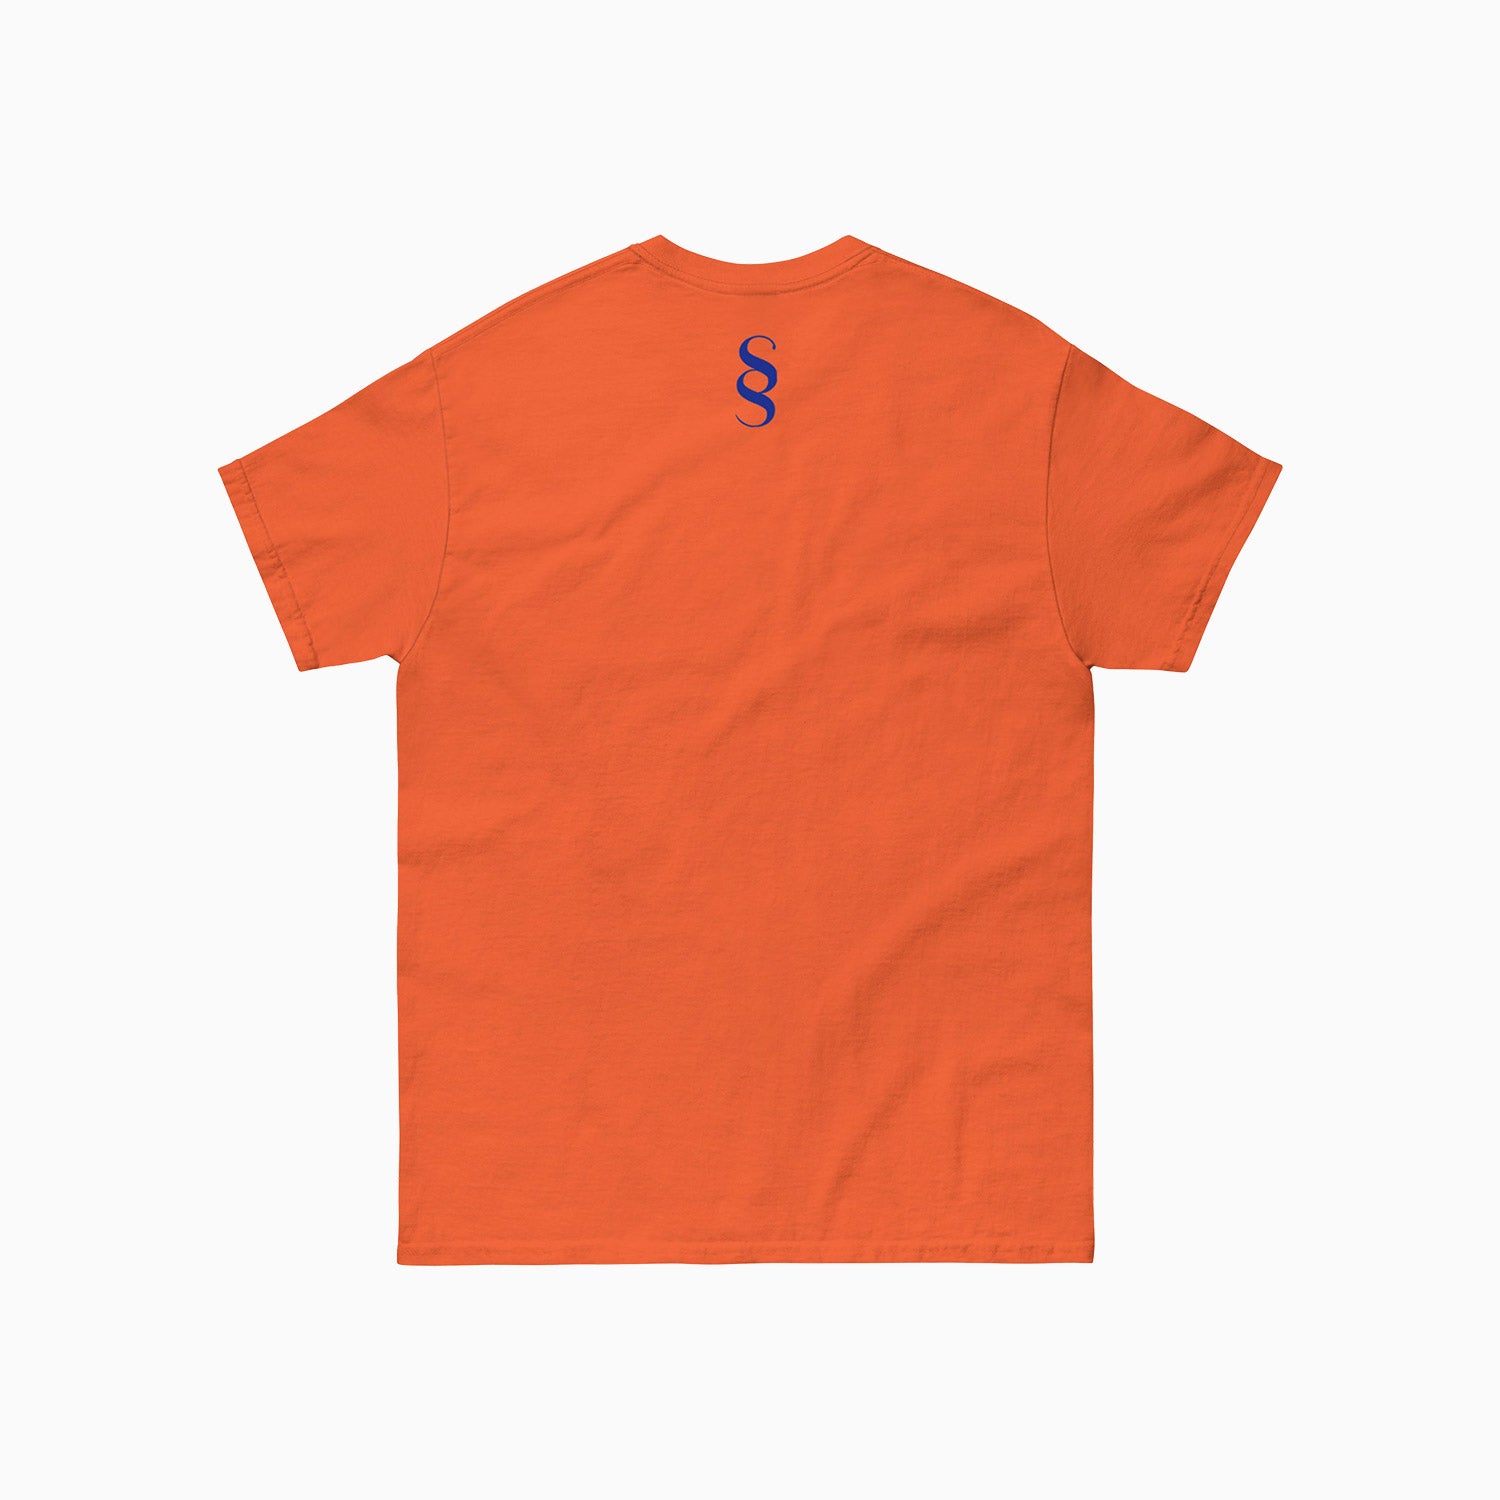 Savar Basic Design Printed Crew Neck Orange T-Shirt For Men - Color: Orange/ Royal Blue - Tops and Bottoms USA -